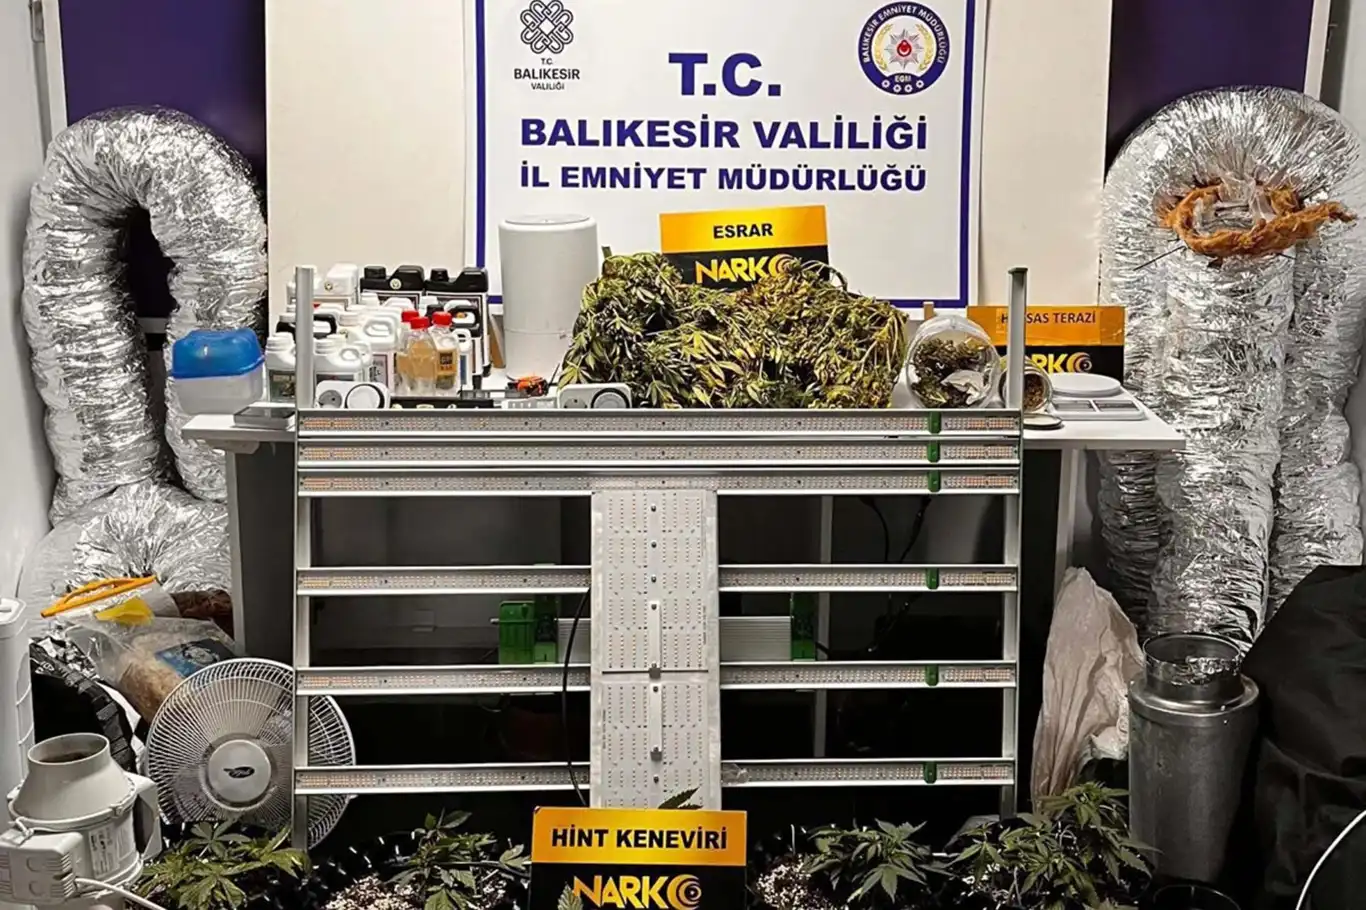 Balıkesir'de uyuşturucu operasyonu: 2 kilogram esrar ele geçirildi